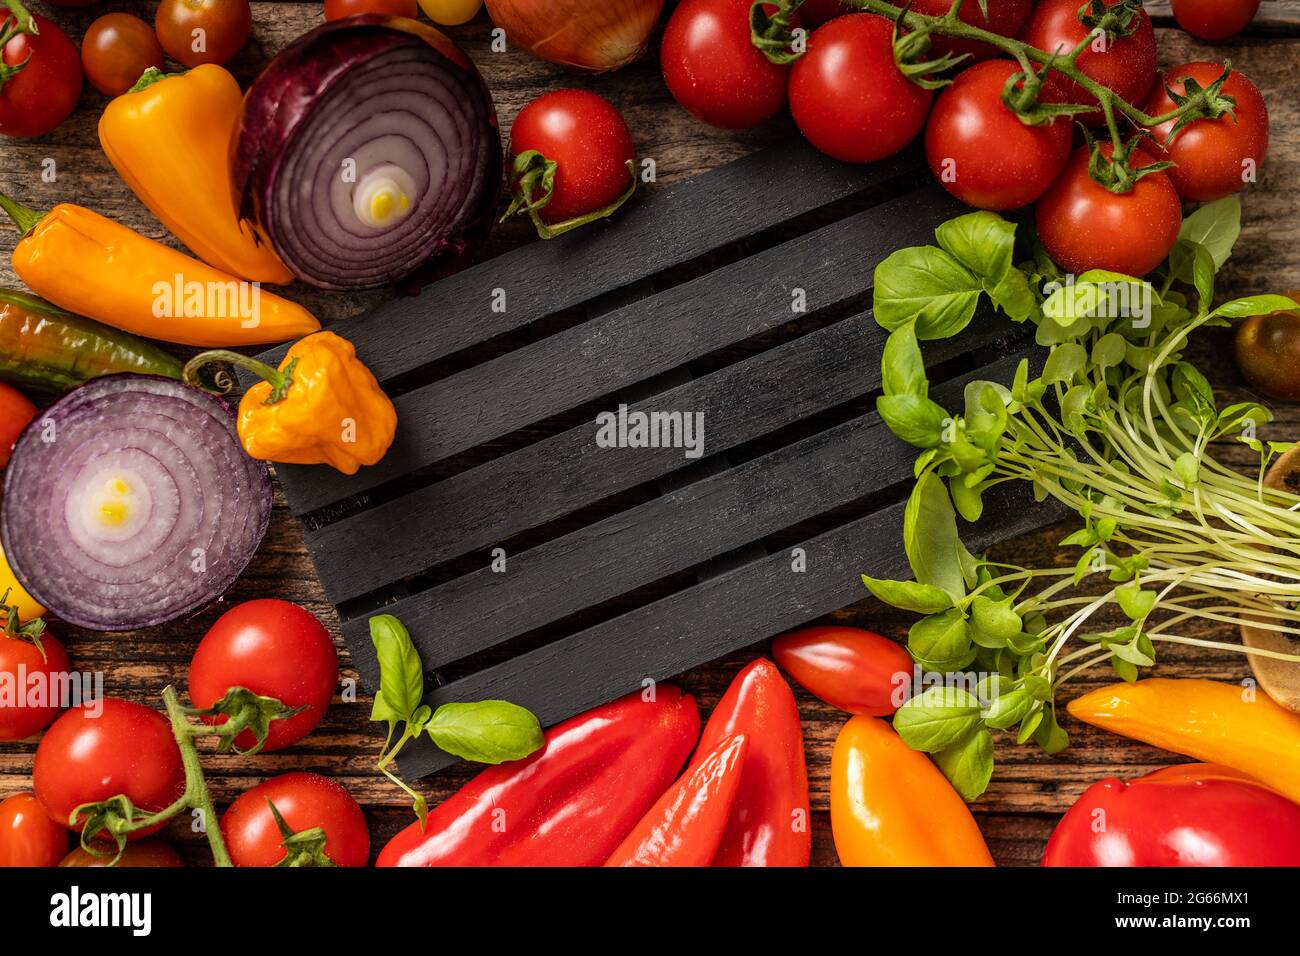 Deliciosas verduras servidas alrededor en la paleta a rayas negras Foto de stock